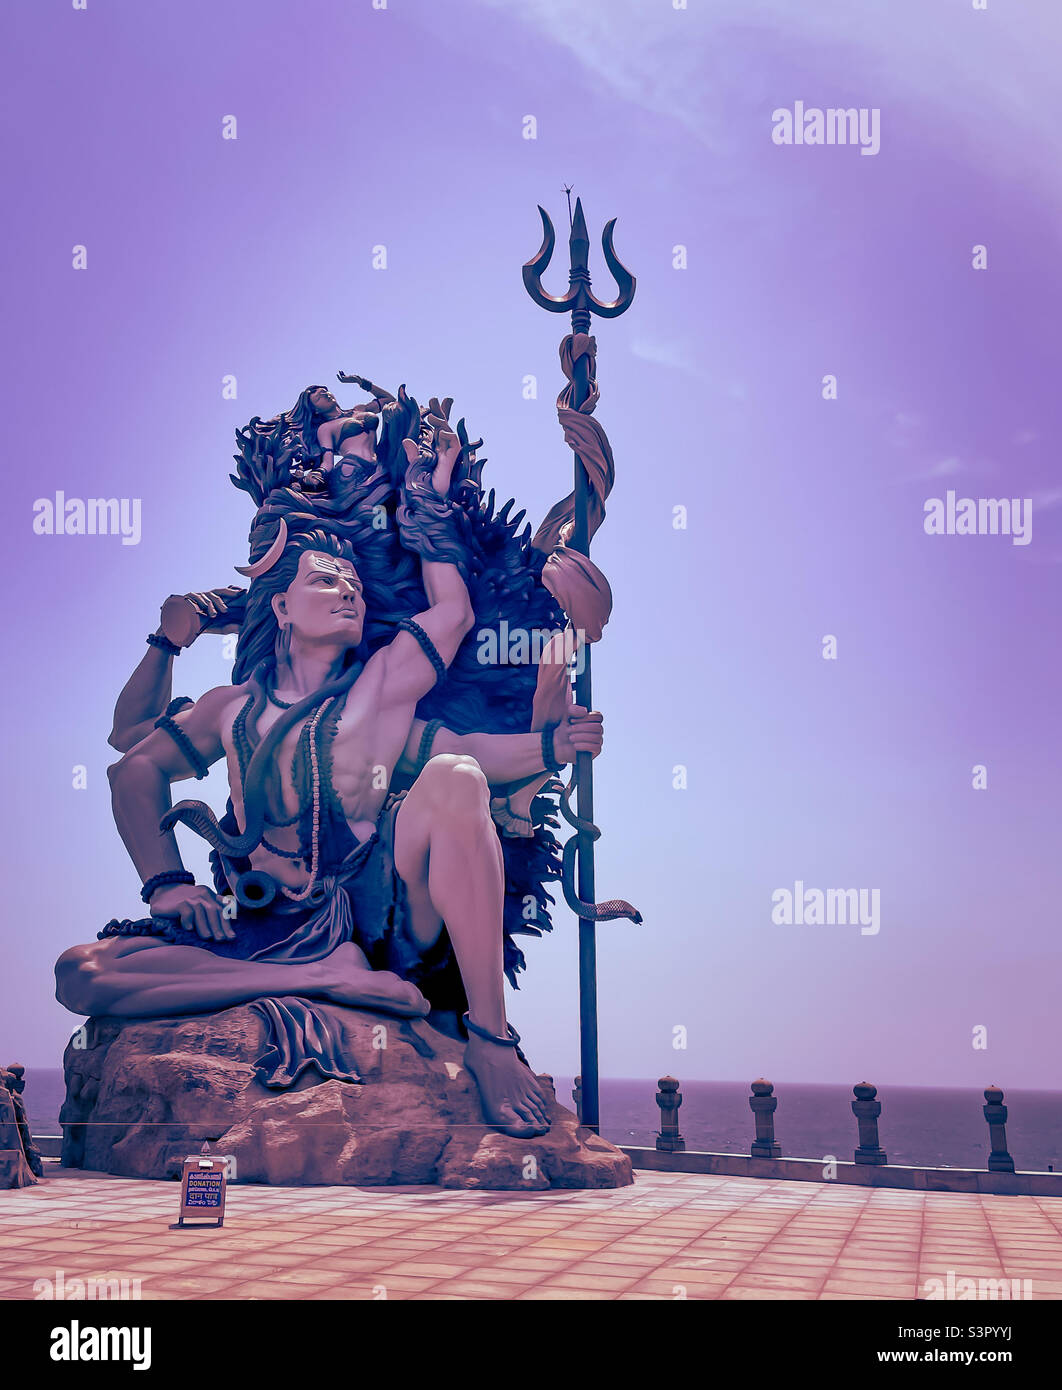 Shiva statue in Azhimala, Thiruvananthapuram Stock Photo